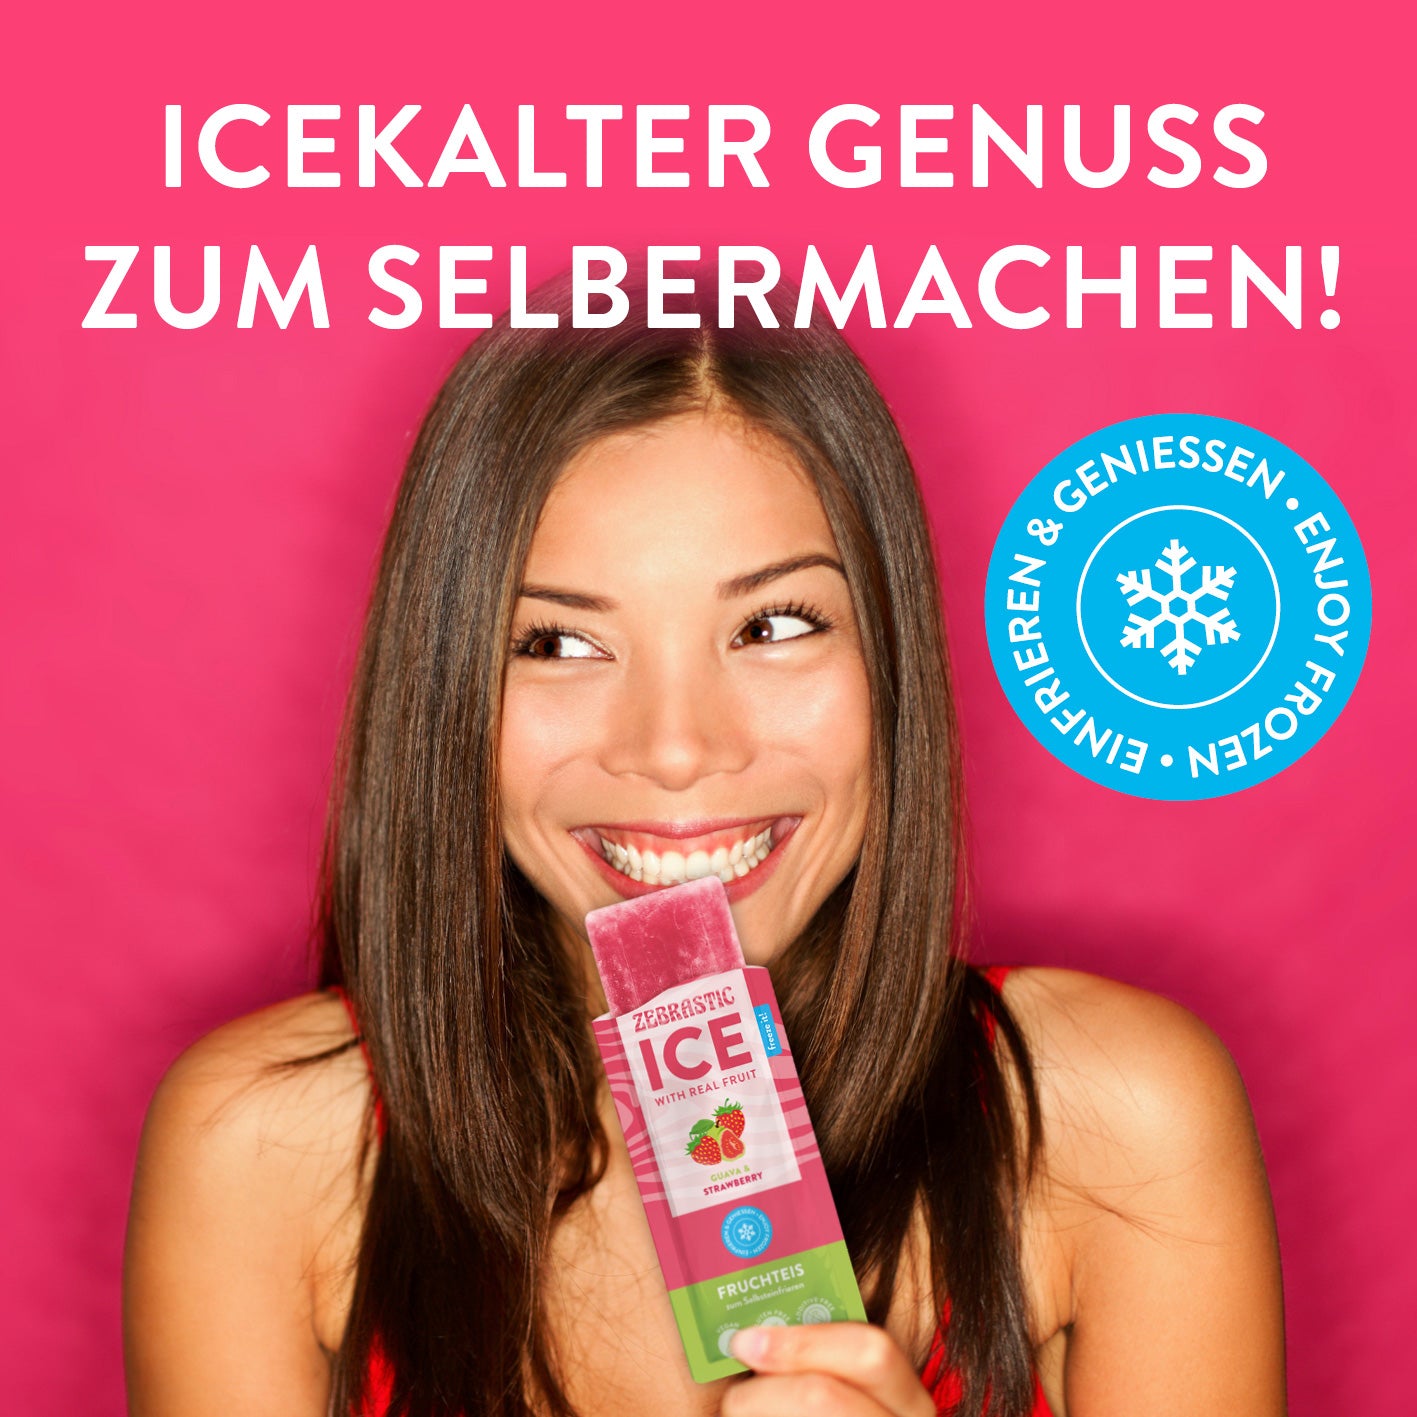 ZEBRASTIC Ice – Fruchteis zum Selbsteinfrieren - Guava & Strawberry - 4er-Set (20x 50g)